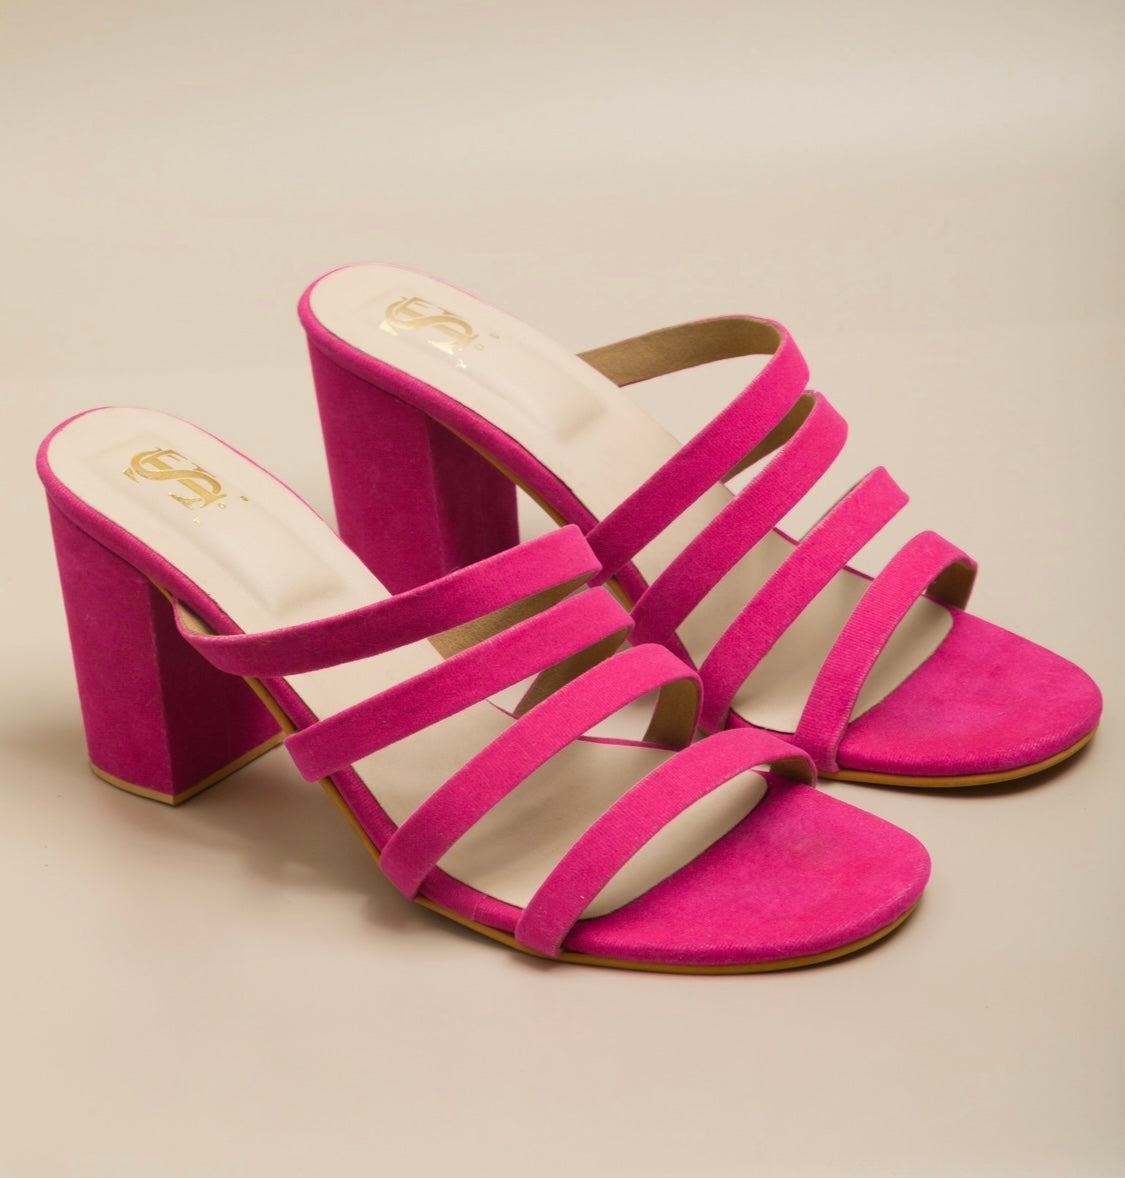 Buy Multi Color Rangsari Block Heels by Schon Zapato Online at Aza Fashions.